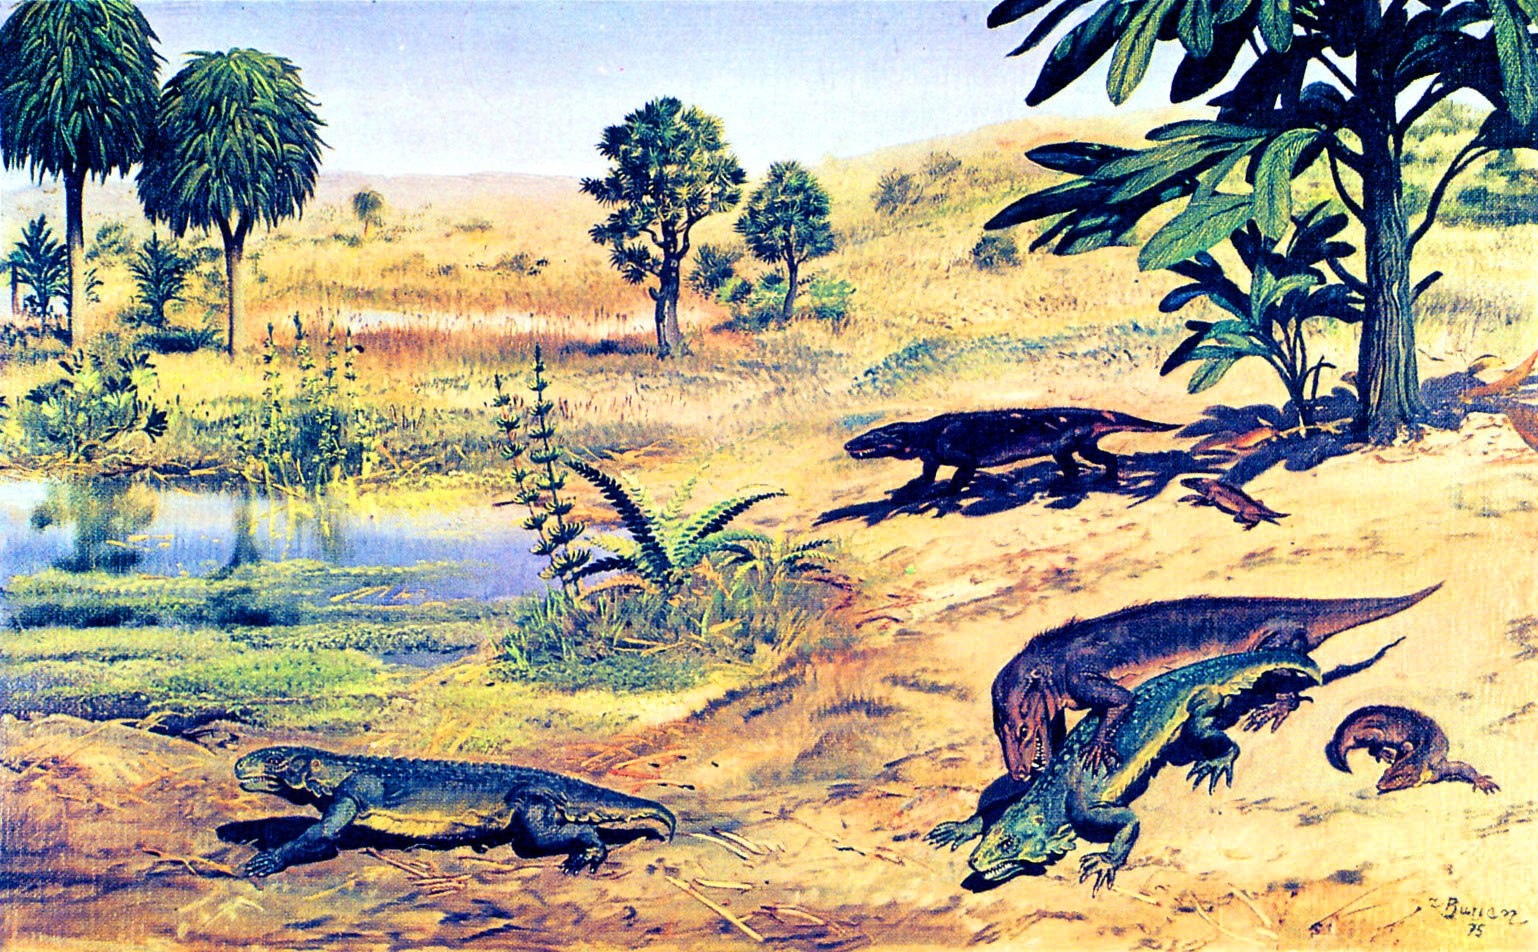 Протерозойская 2 палеозойская 3 мезозойская. Зденек Буриан динозавры. Зденек Буриан Триас. Динозавры Триасового периода. Триасовый период мезозойской эры.